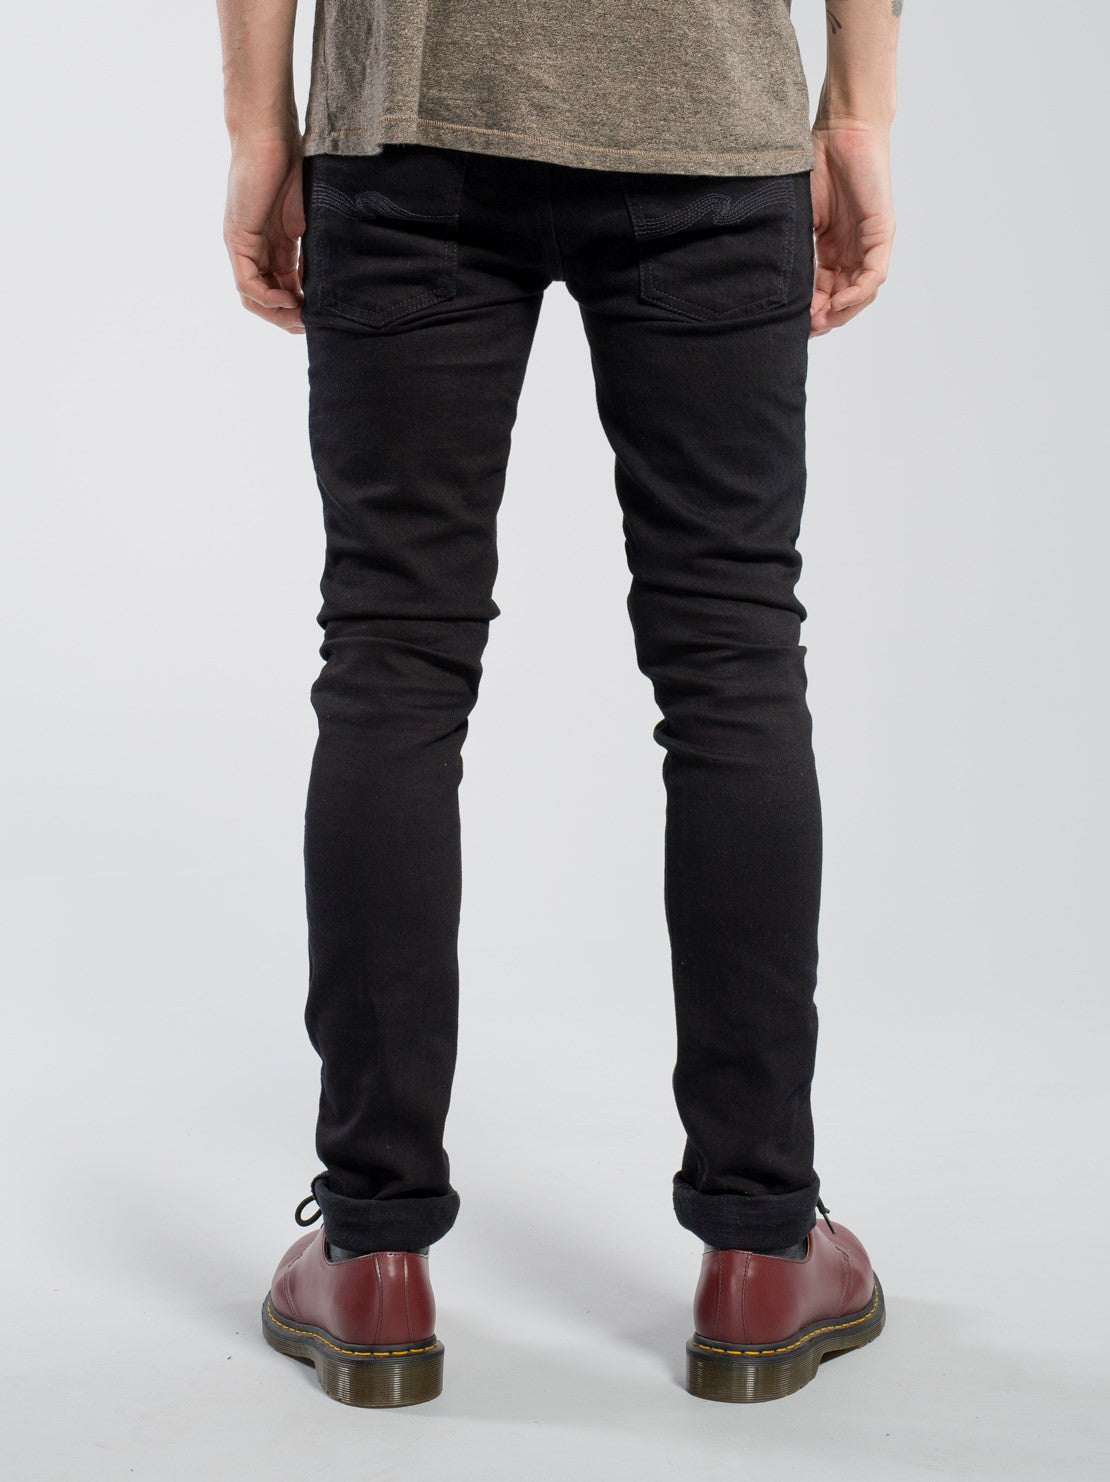 Nudie Jeans Tight Long John Black Black - Mildblend Supply Co